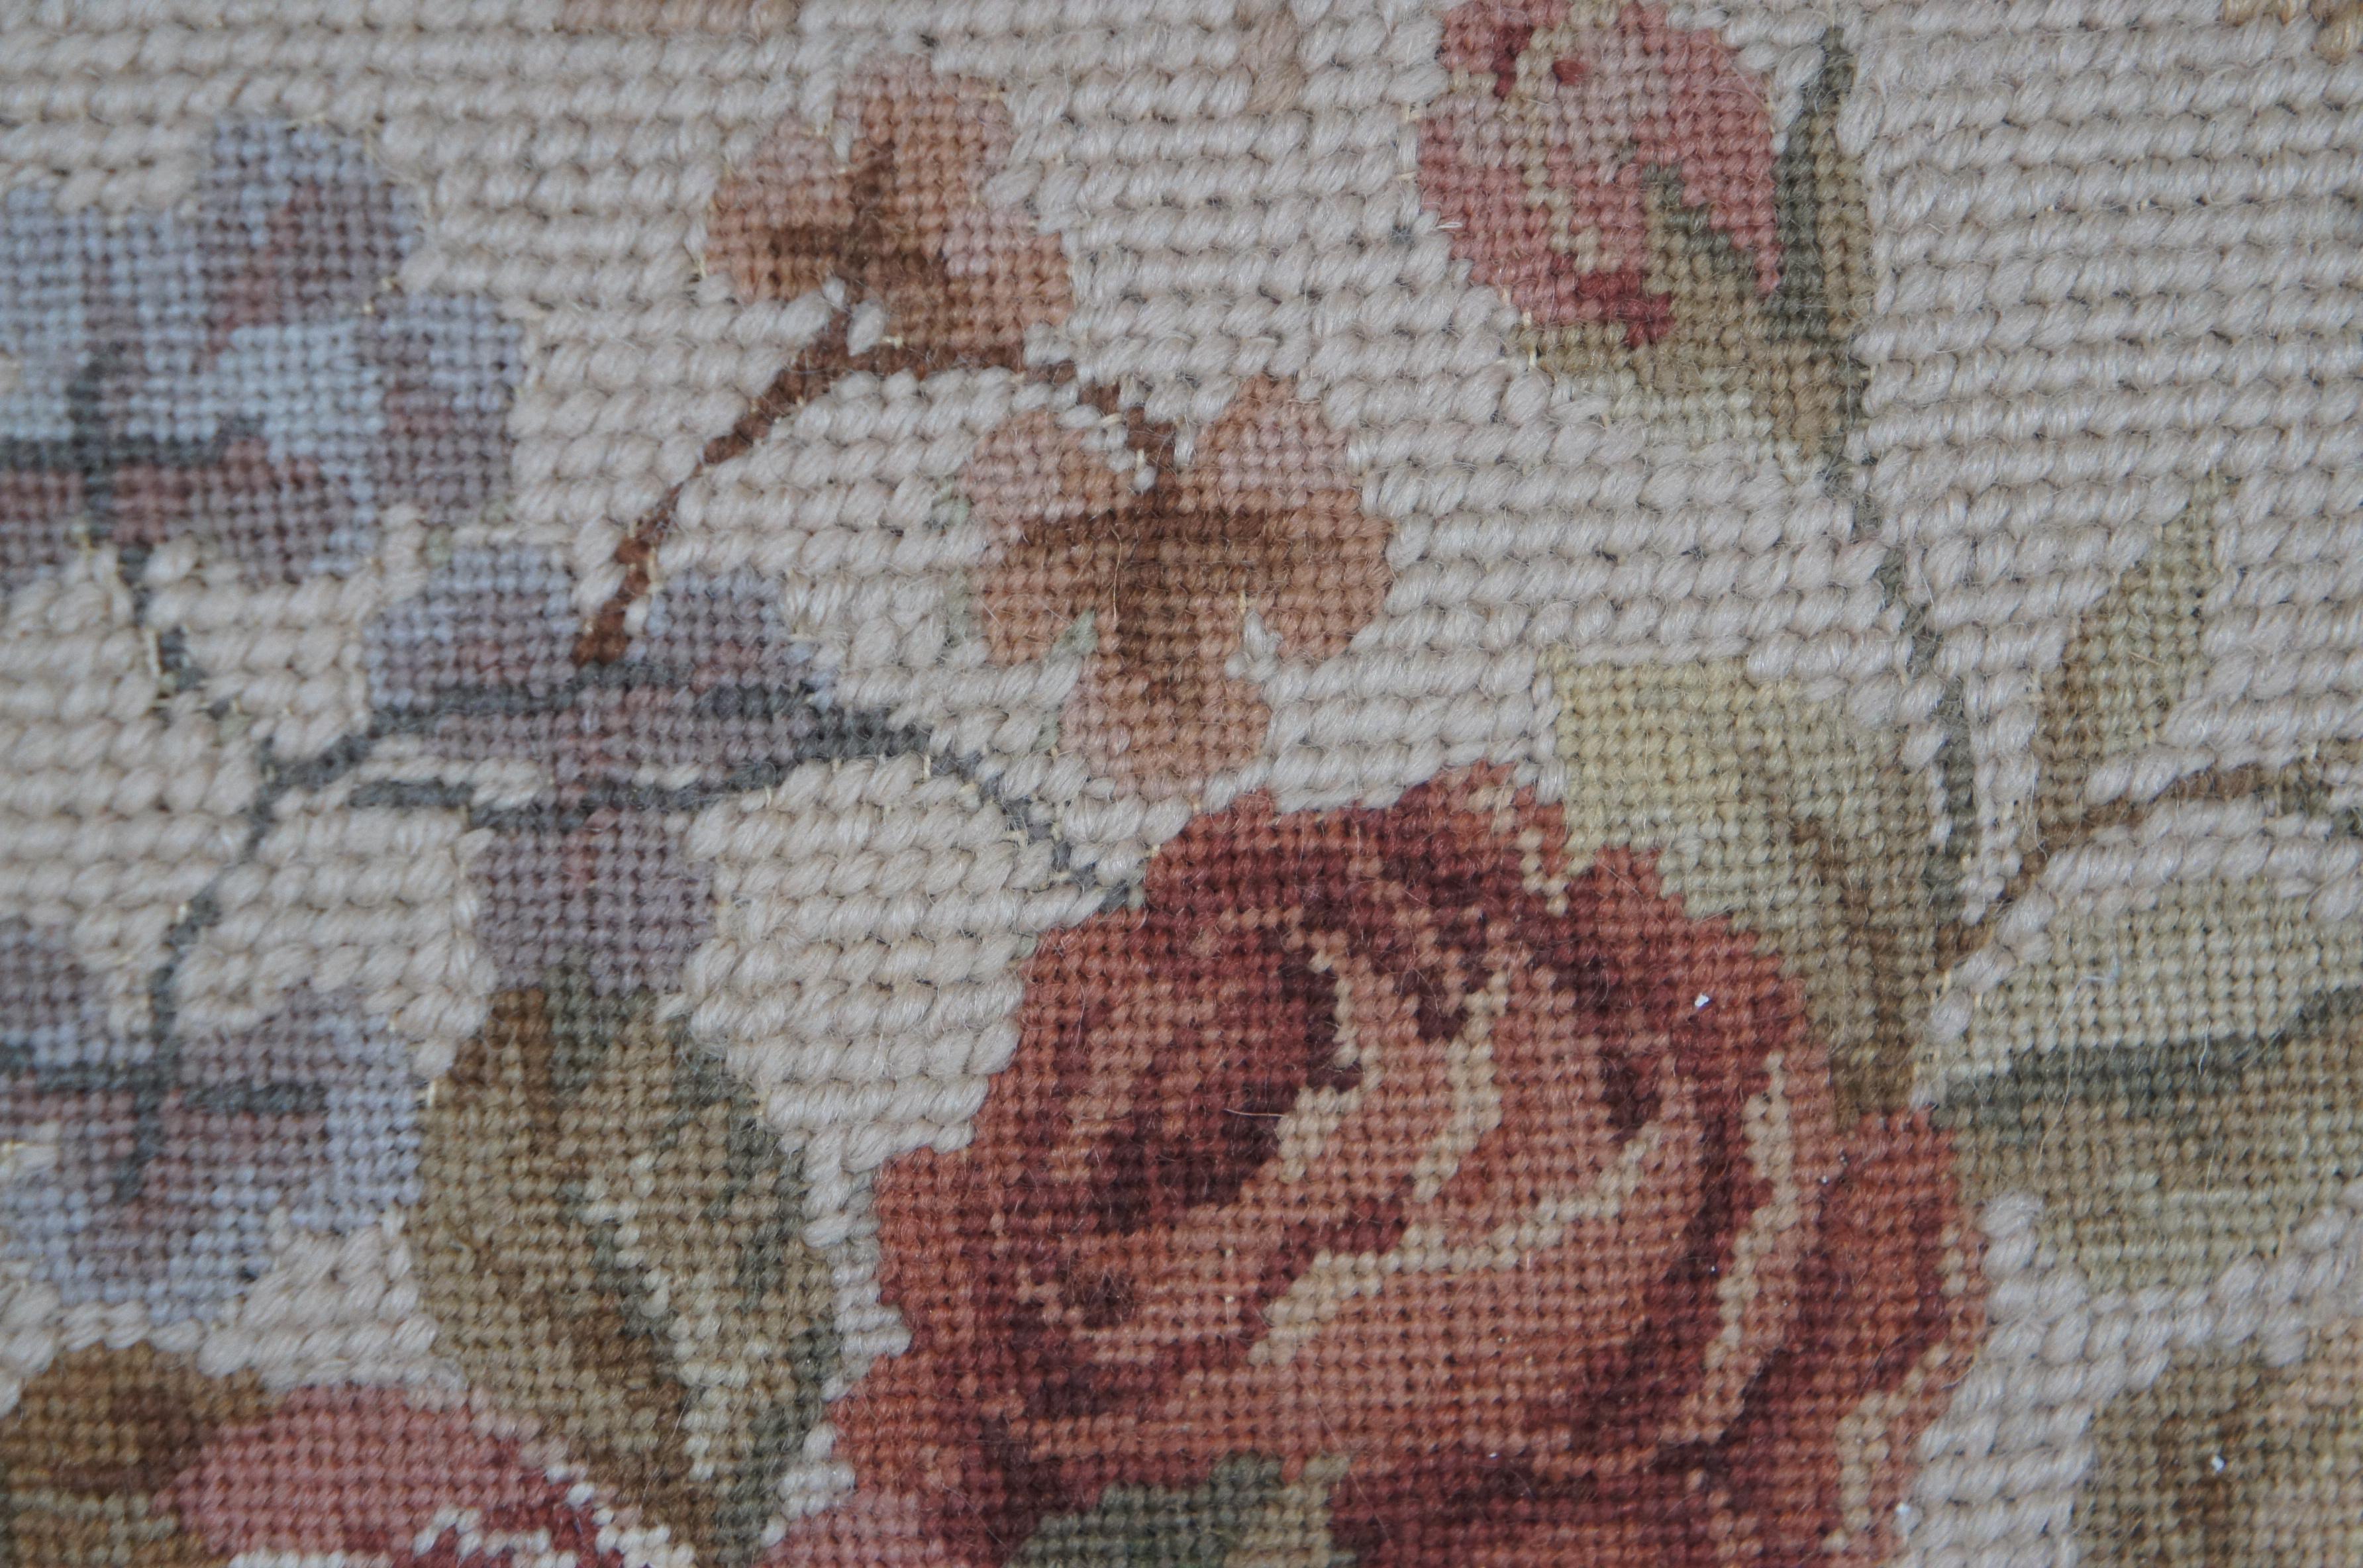 Down Filled Floral Rose Bouquet Wool Needlepoint Tassel Lumbar Throw Pillow 16